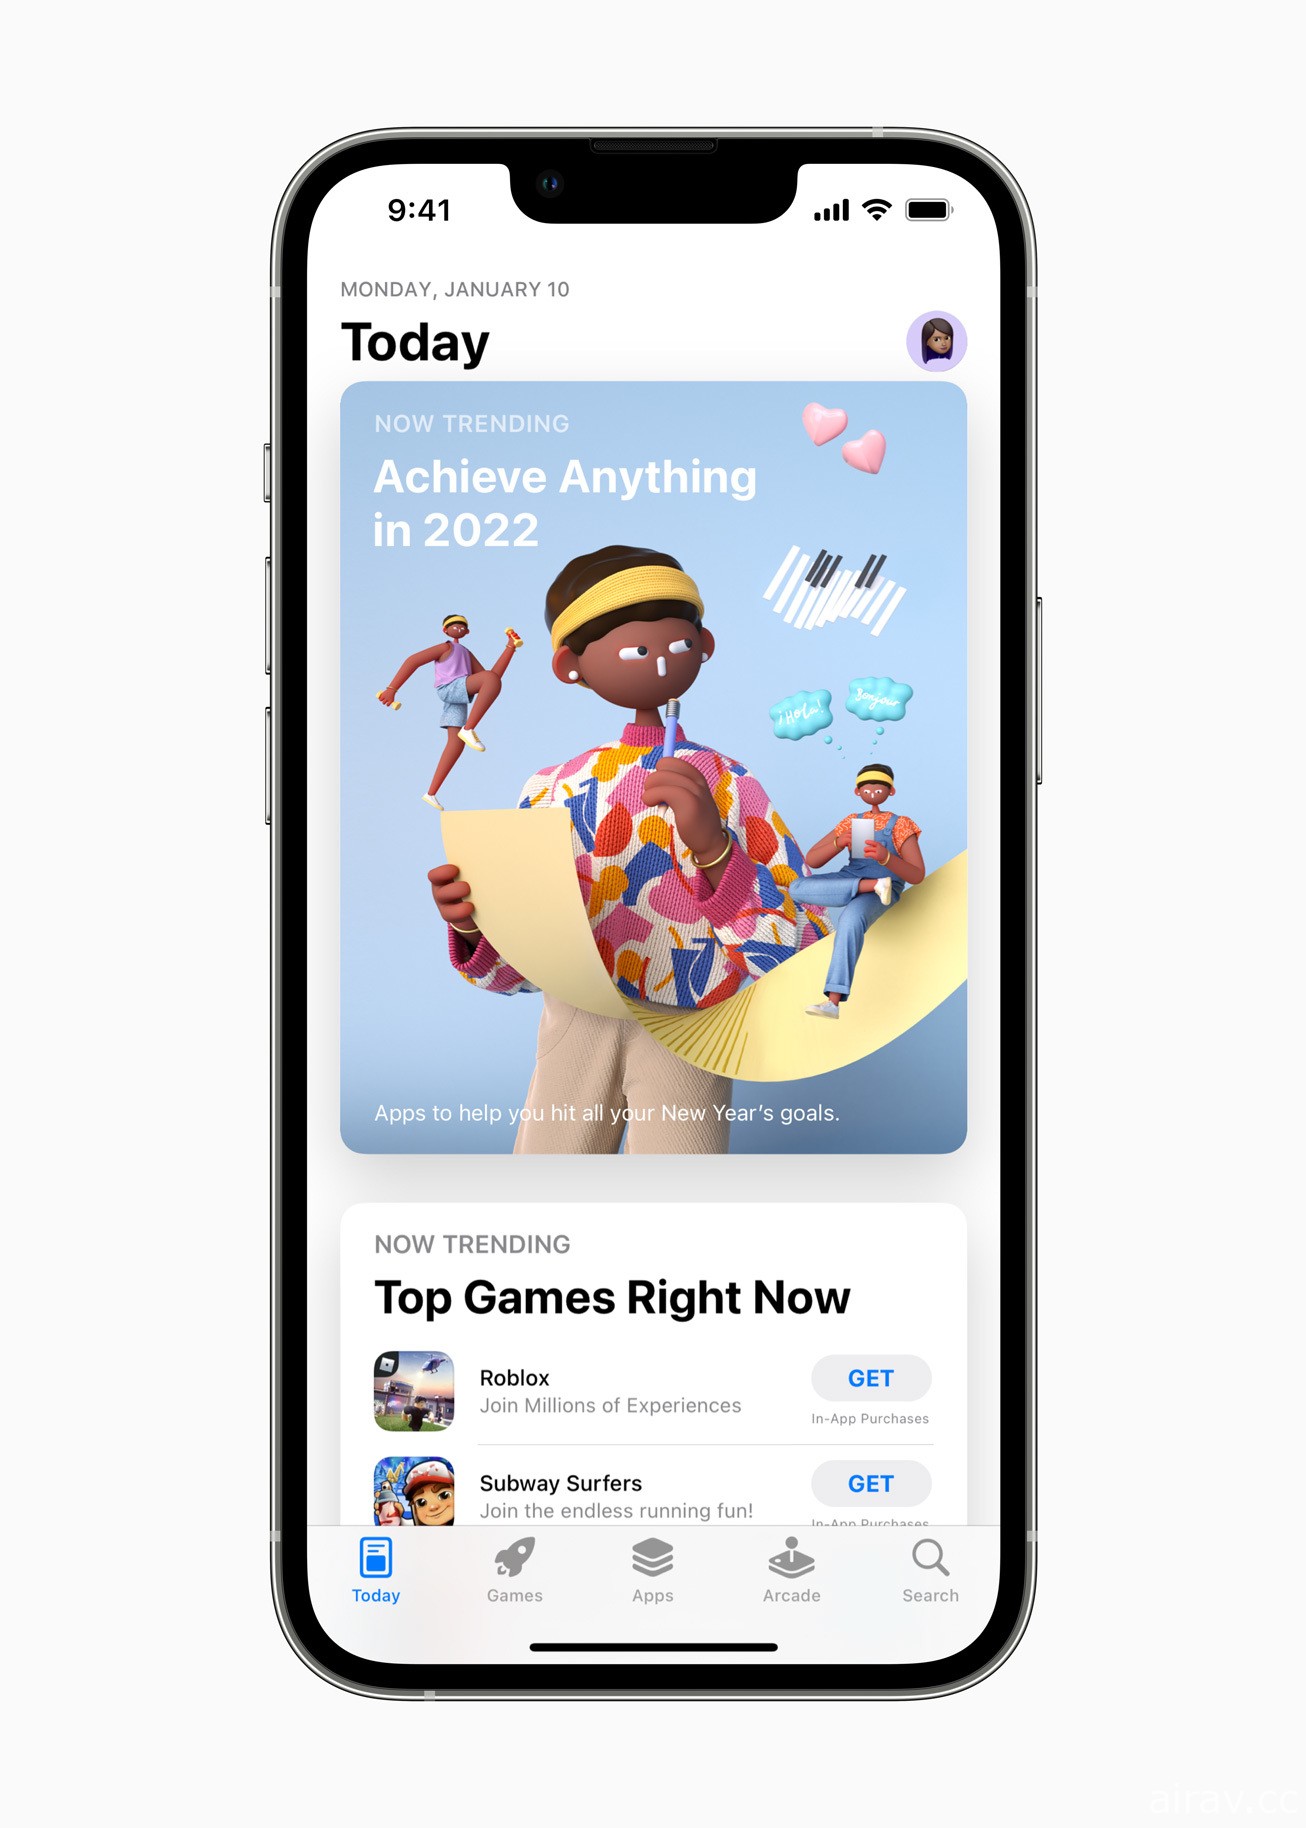 Apple 回顾 2021 年内容 展望 2022 年即将推出的新游戏、音乐、电影等更多体验